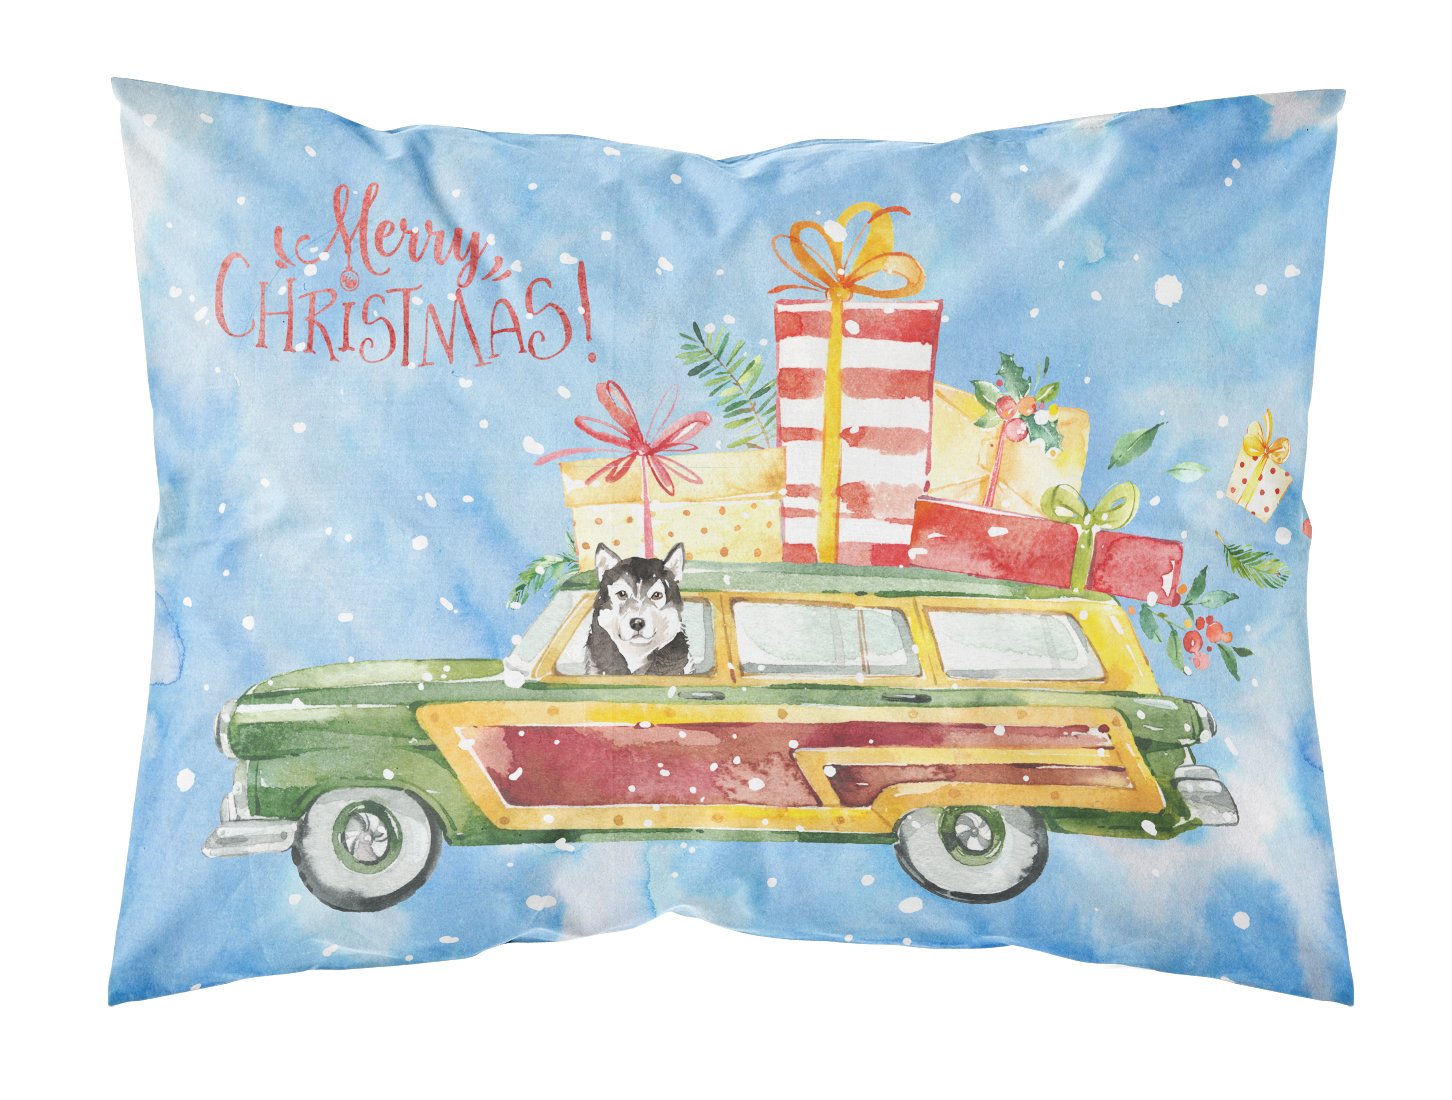 Merry Christmas Alaskan Malamute Fabric Standard Pillowcase CK2413PILLOWCASE by Caroline's Treasures